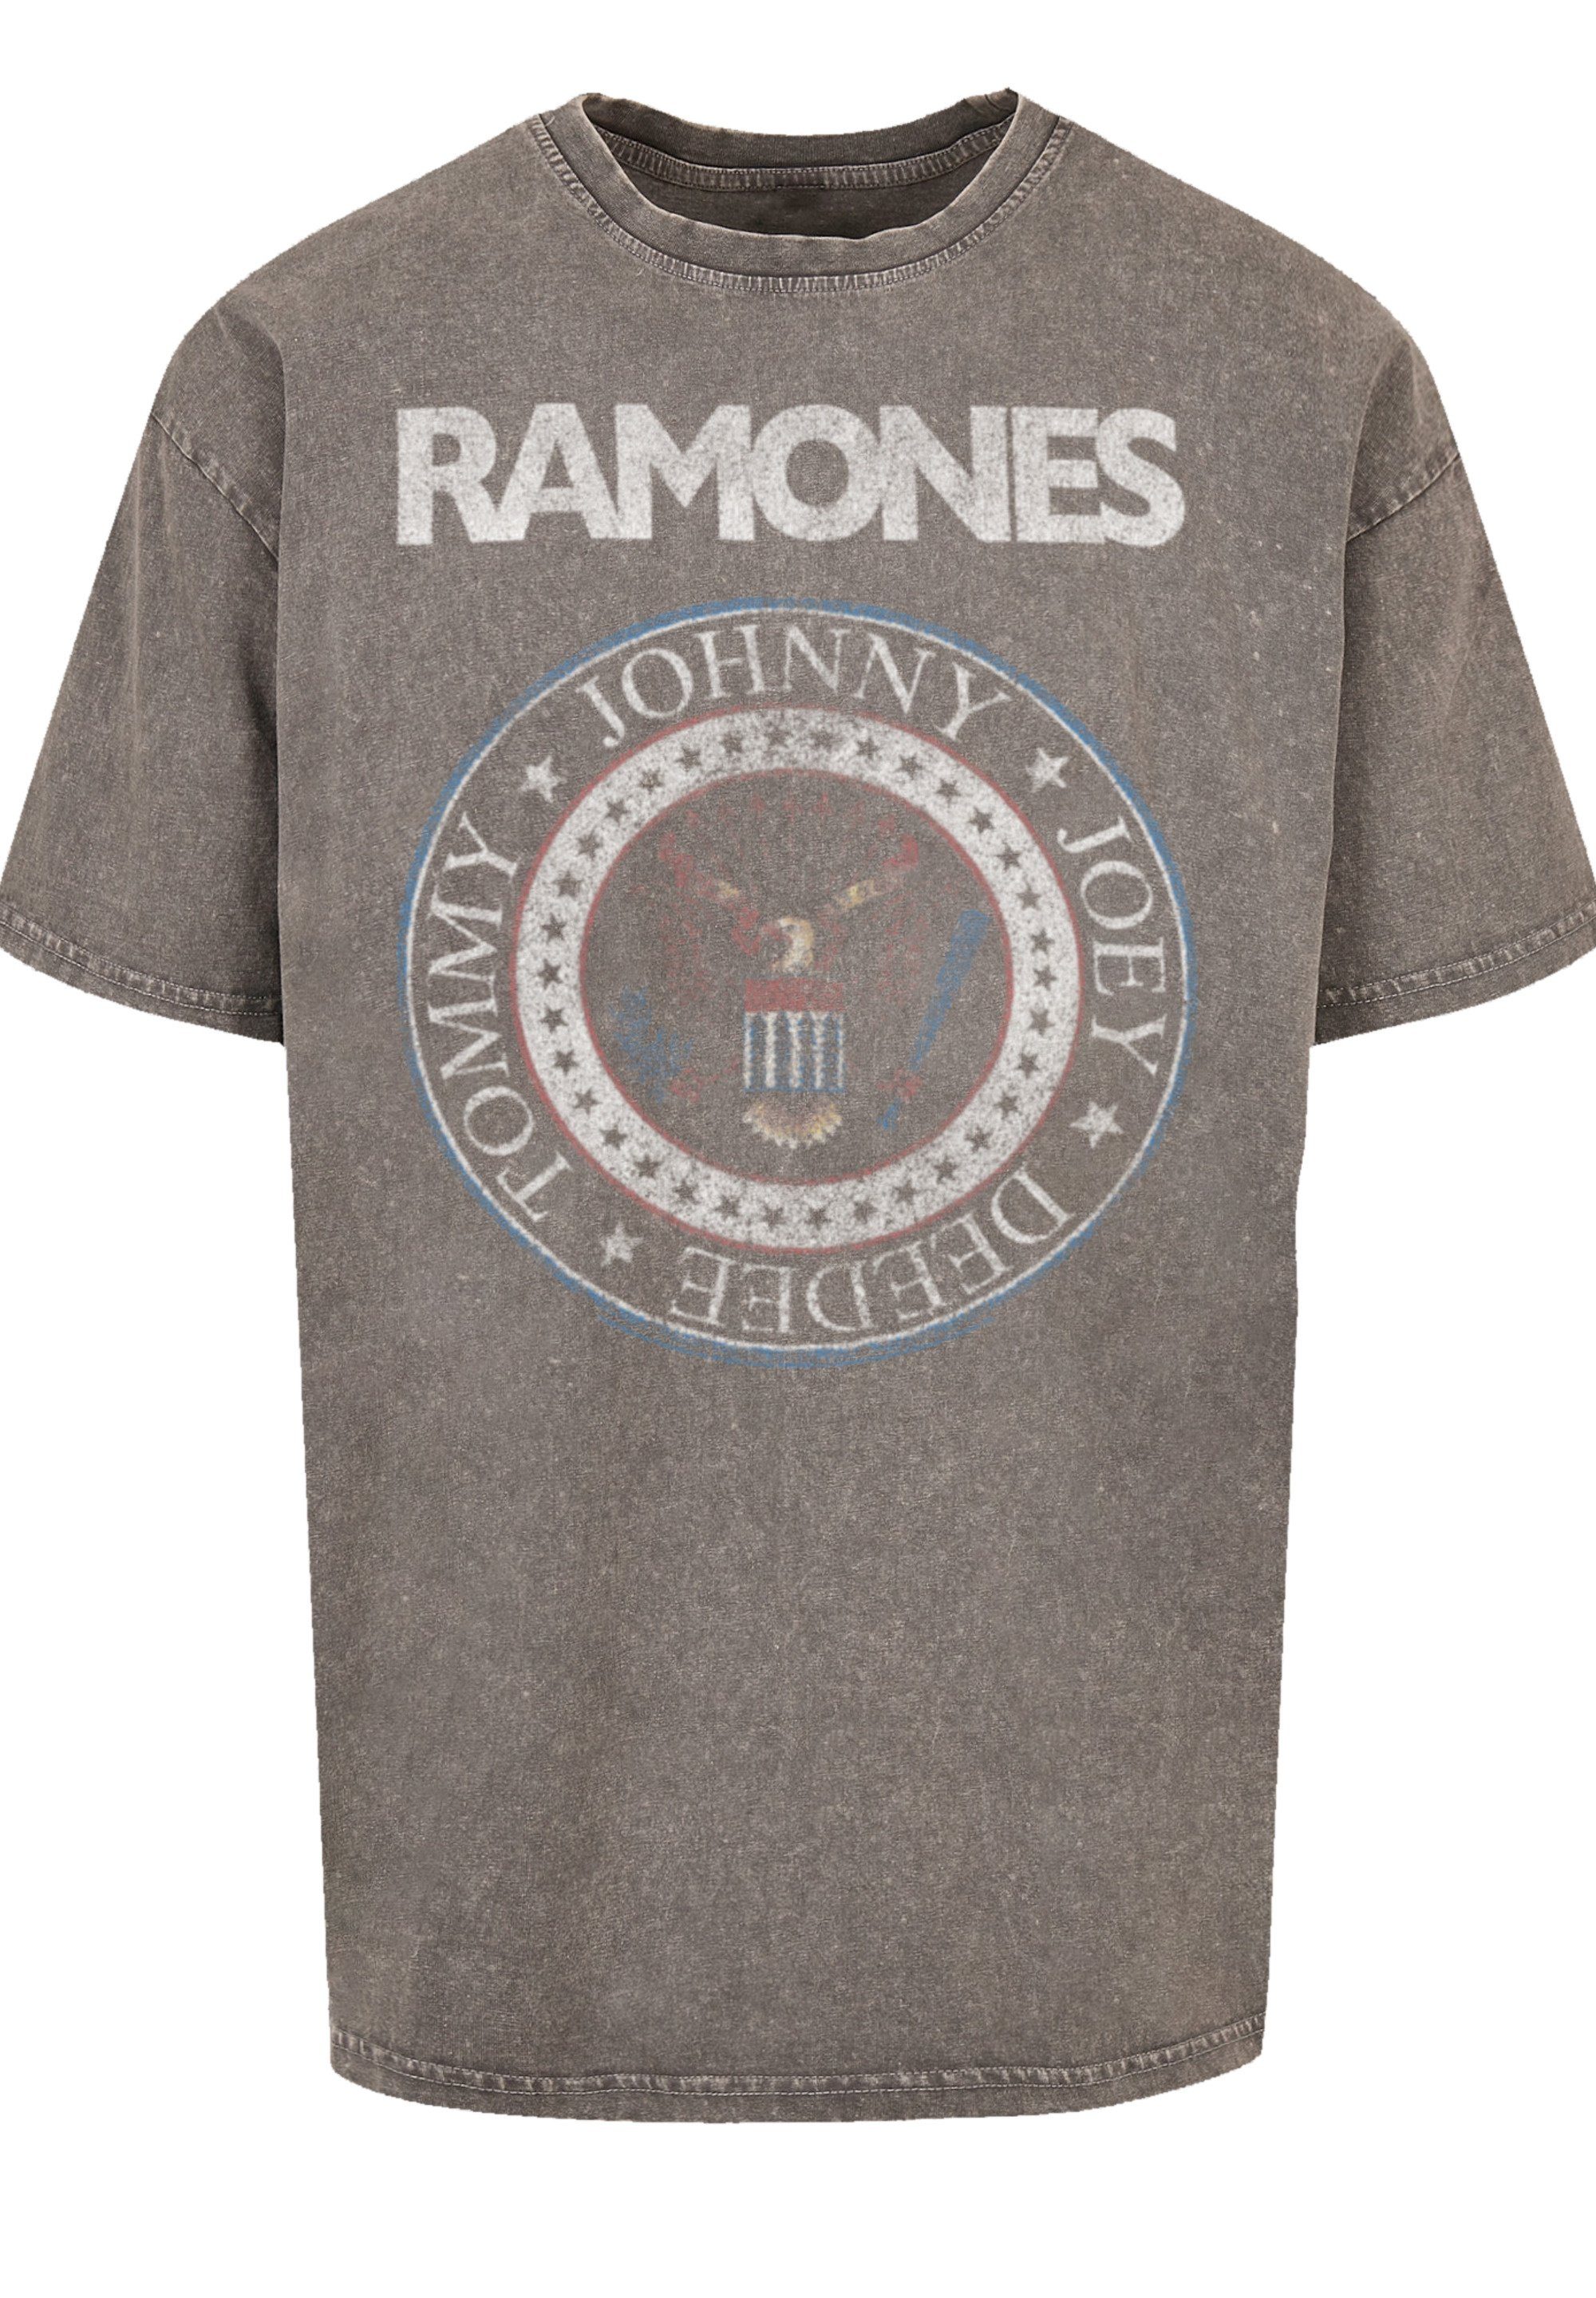 Ramones T-Shirt Seal Premium Hochwertige F4NT4STIC Qualität, Musik Red And Rock-Musik, Band, Rock Band Baumwollqualität White